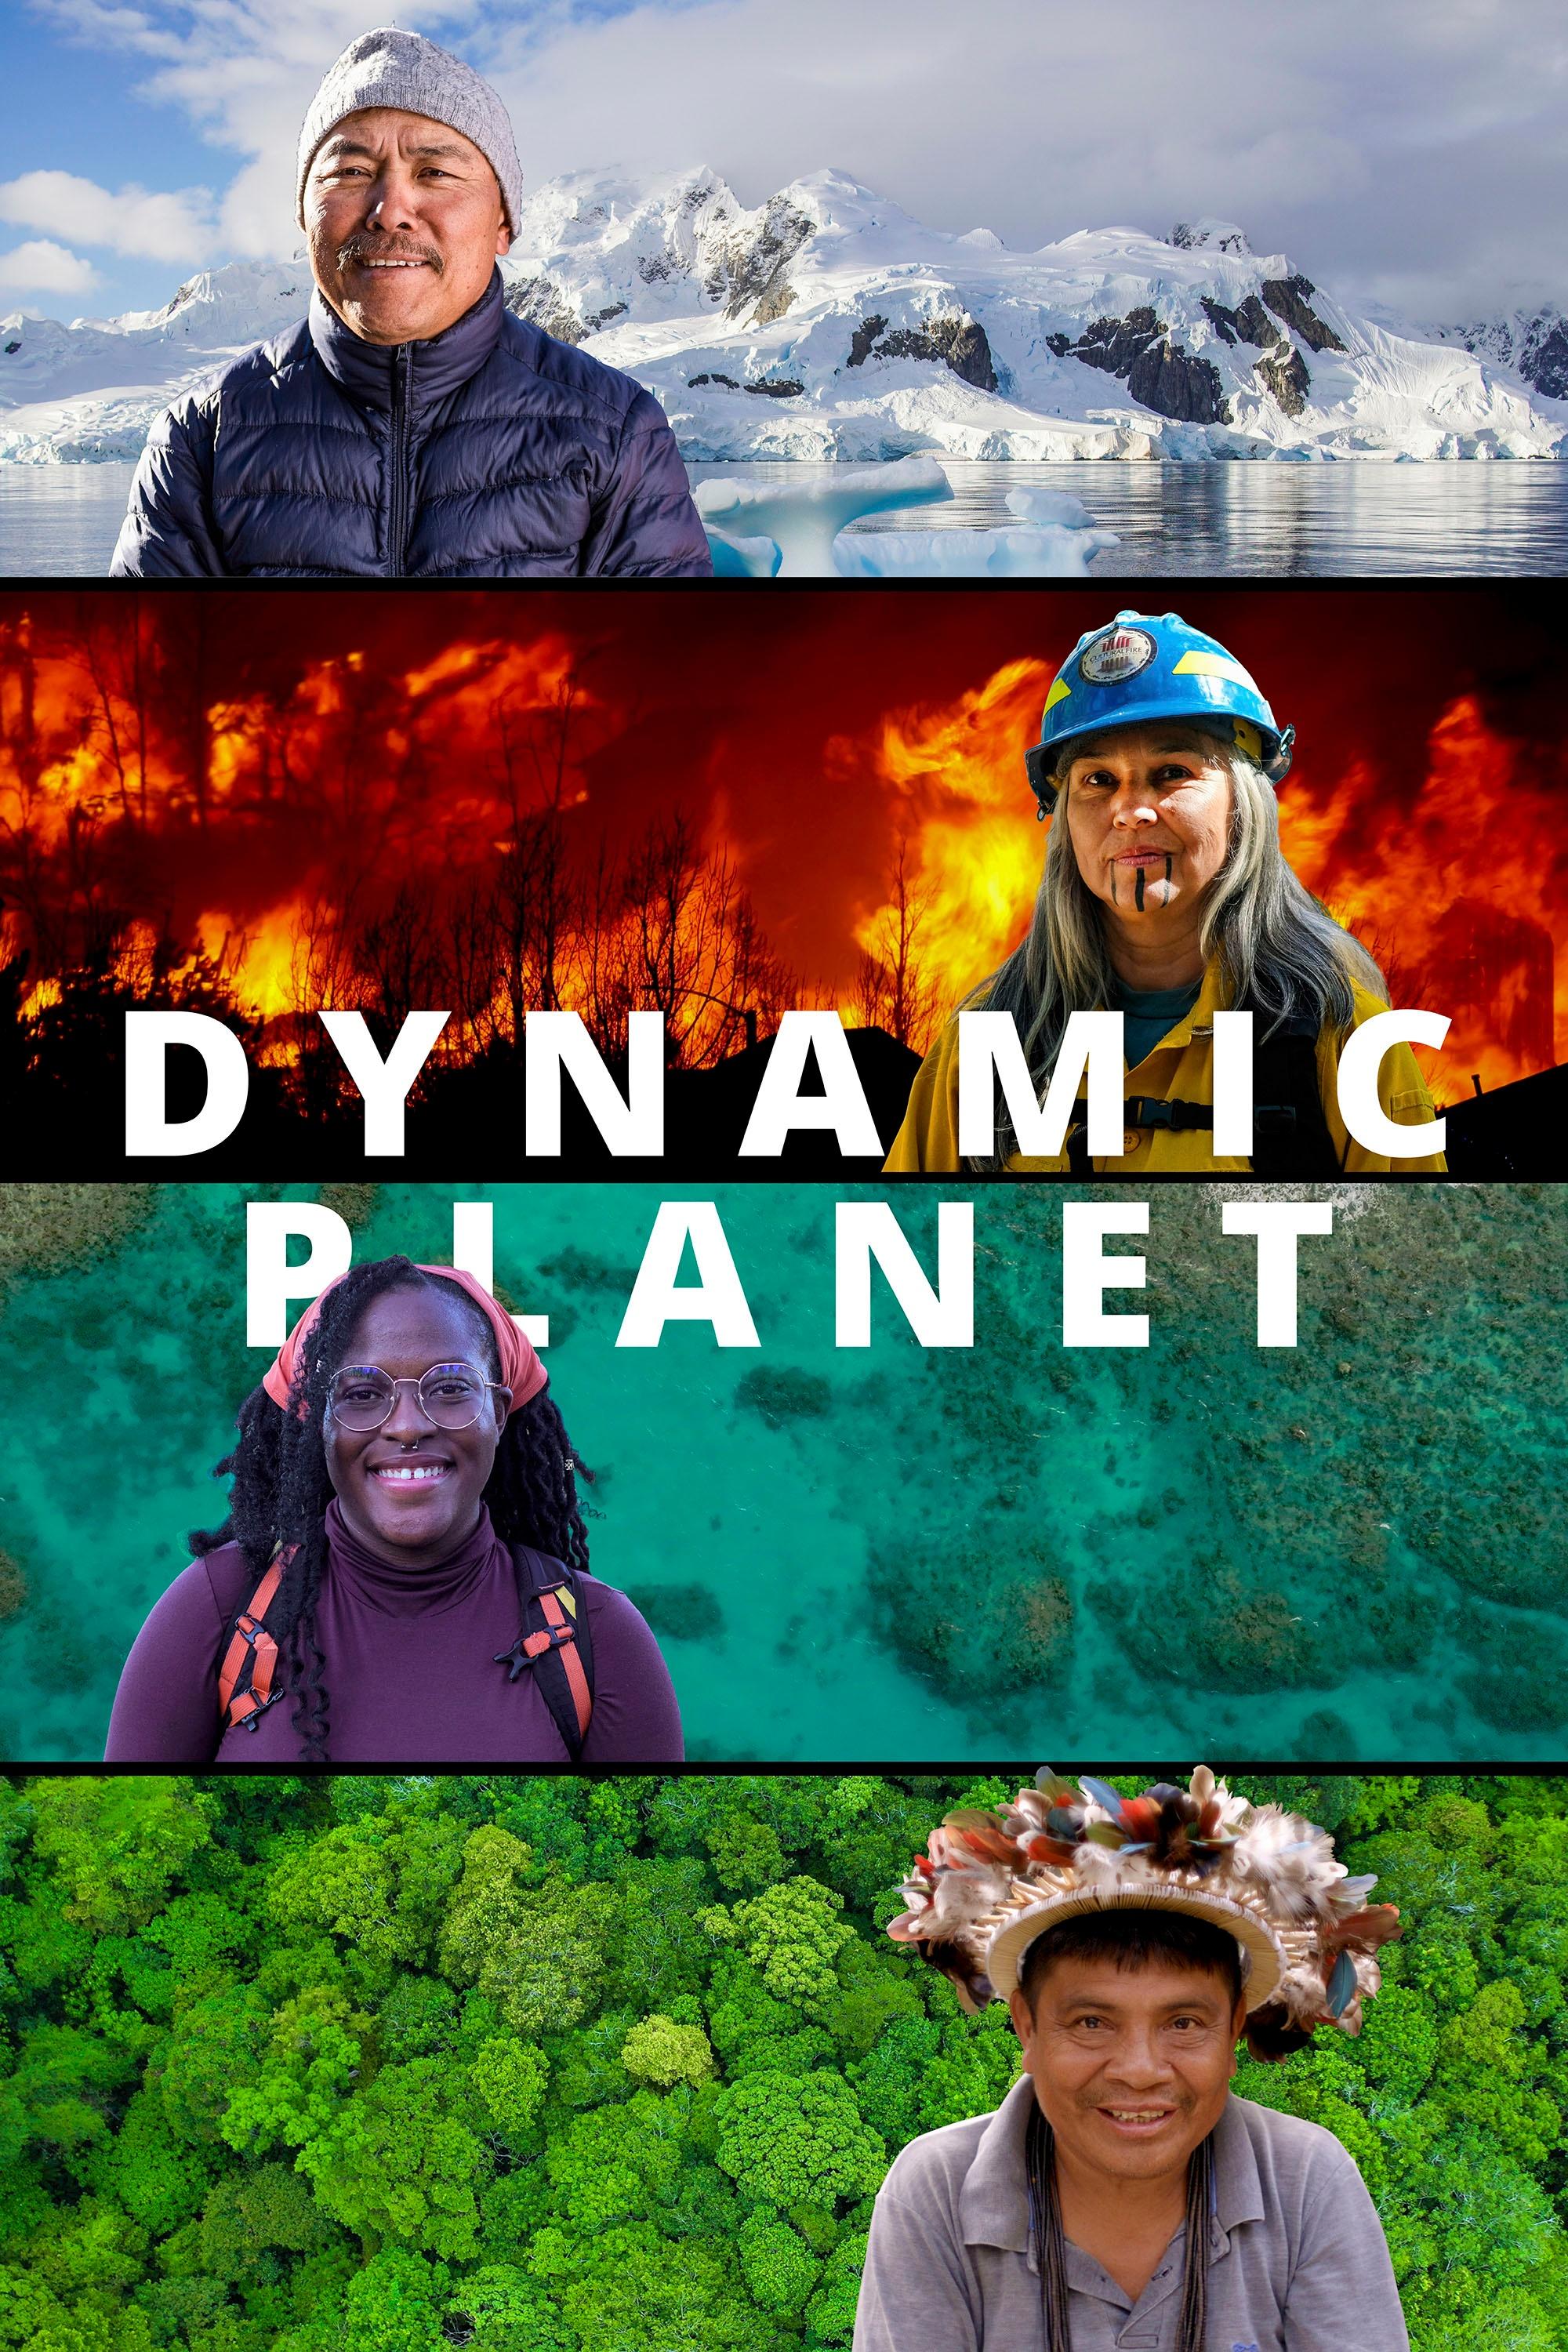 Dynamic Planet